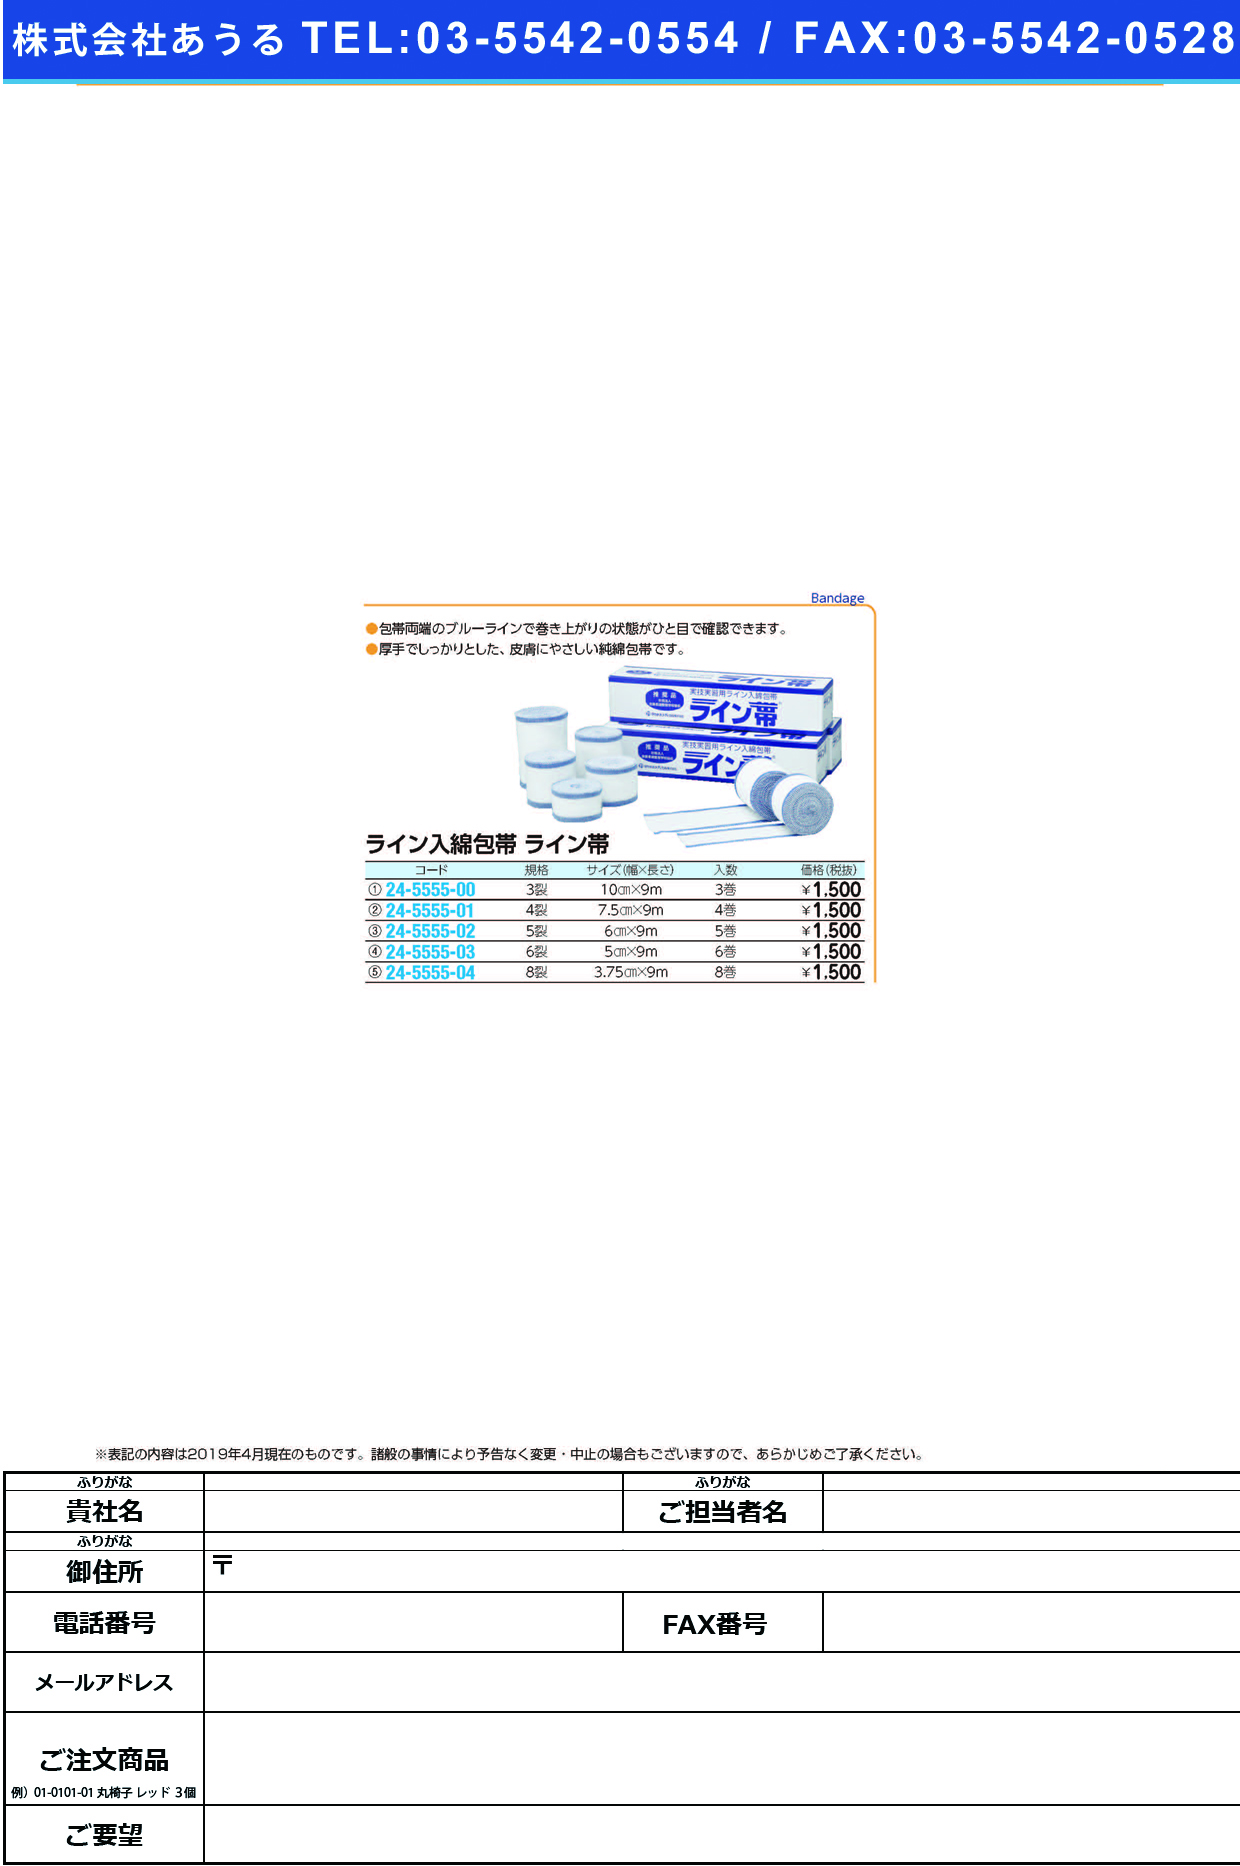 (24-5555-03)ライン帯ＳＰ６裂 TB-6R(5.0CMX9M)6ｶﾝ ﾗｲﾝﾀｲｴｽﾋﾟｰｼﾞﾂｷﾞﾖｳ【1箱単位】【2019年カタログ商品】